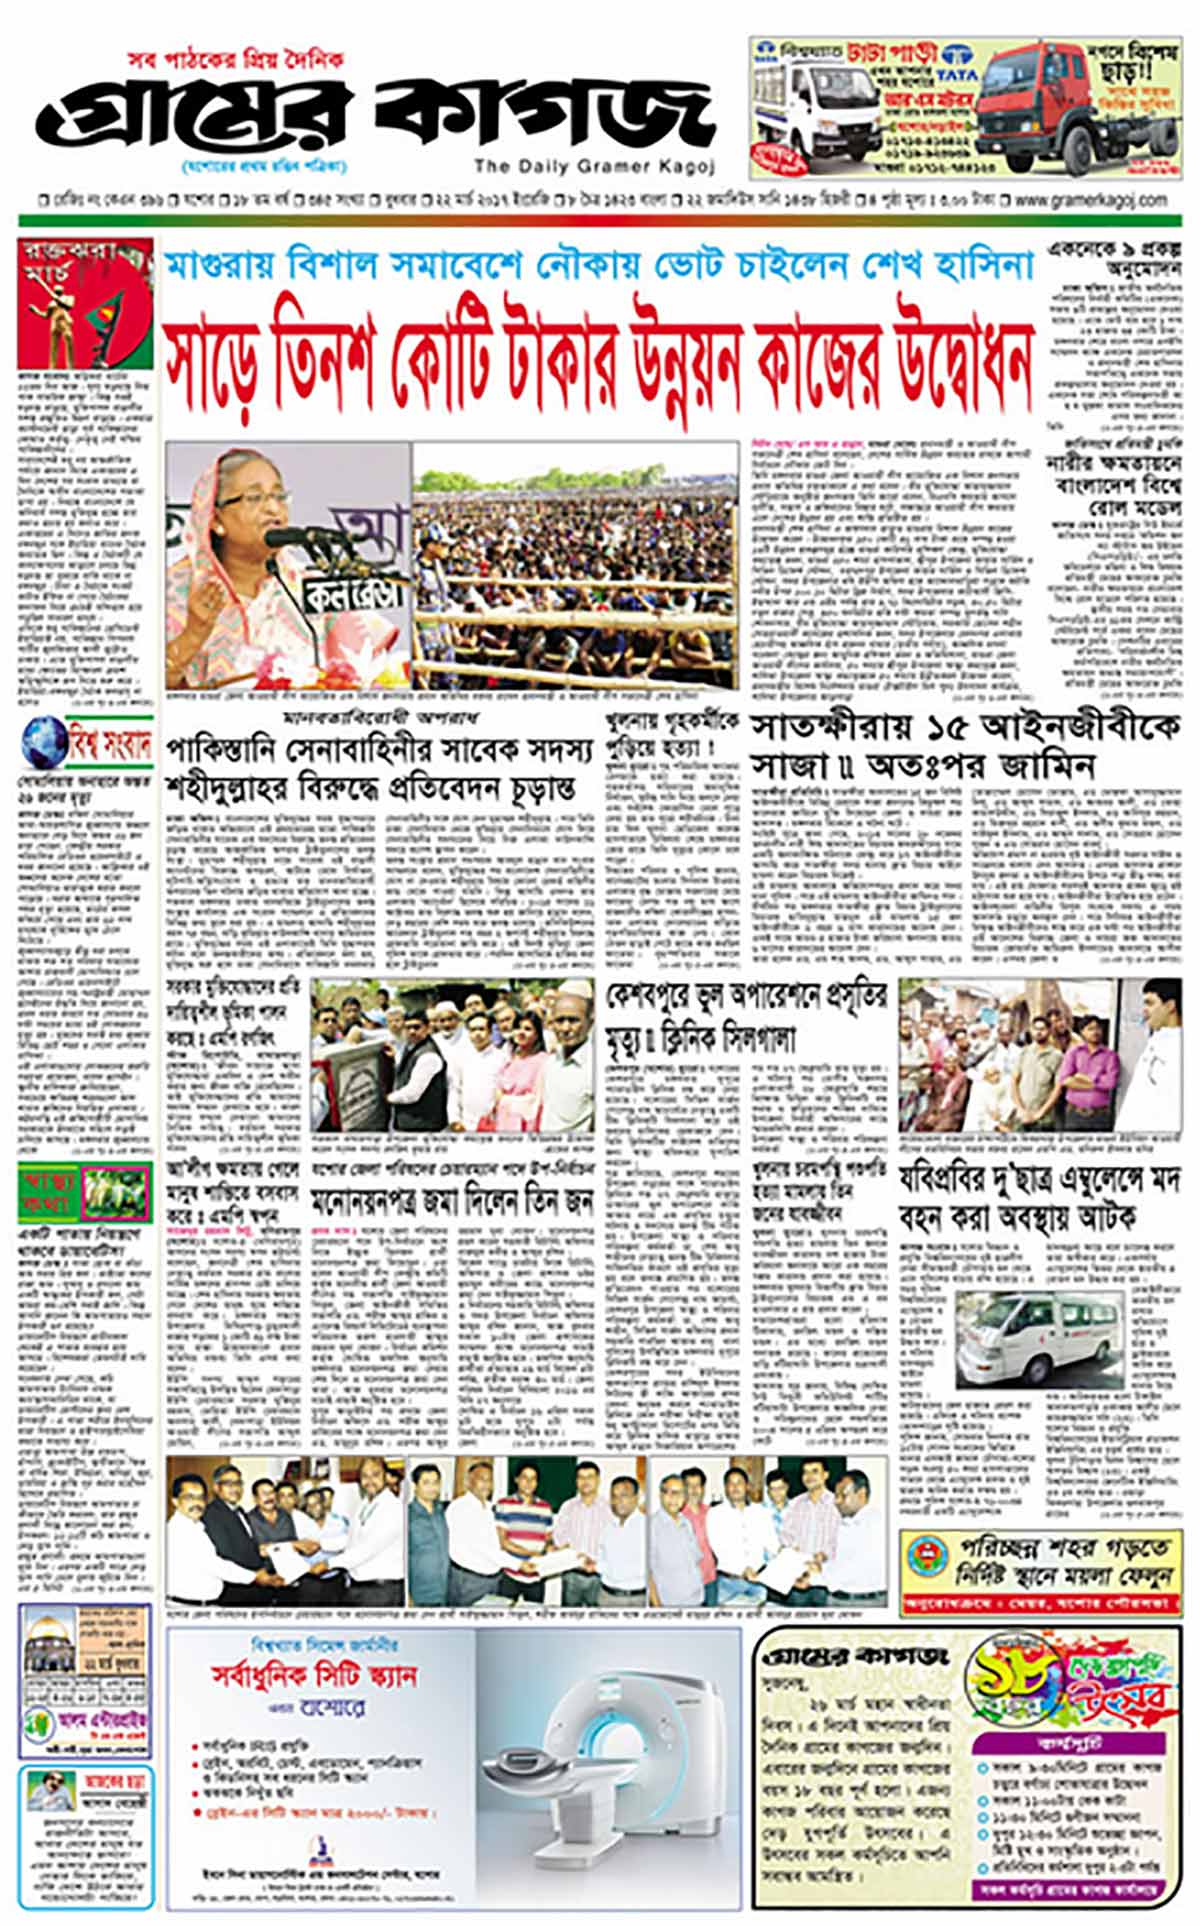 Bangladesh Newspapers 109 Gramer Kagoj